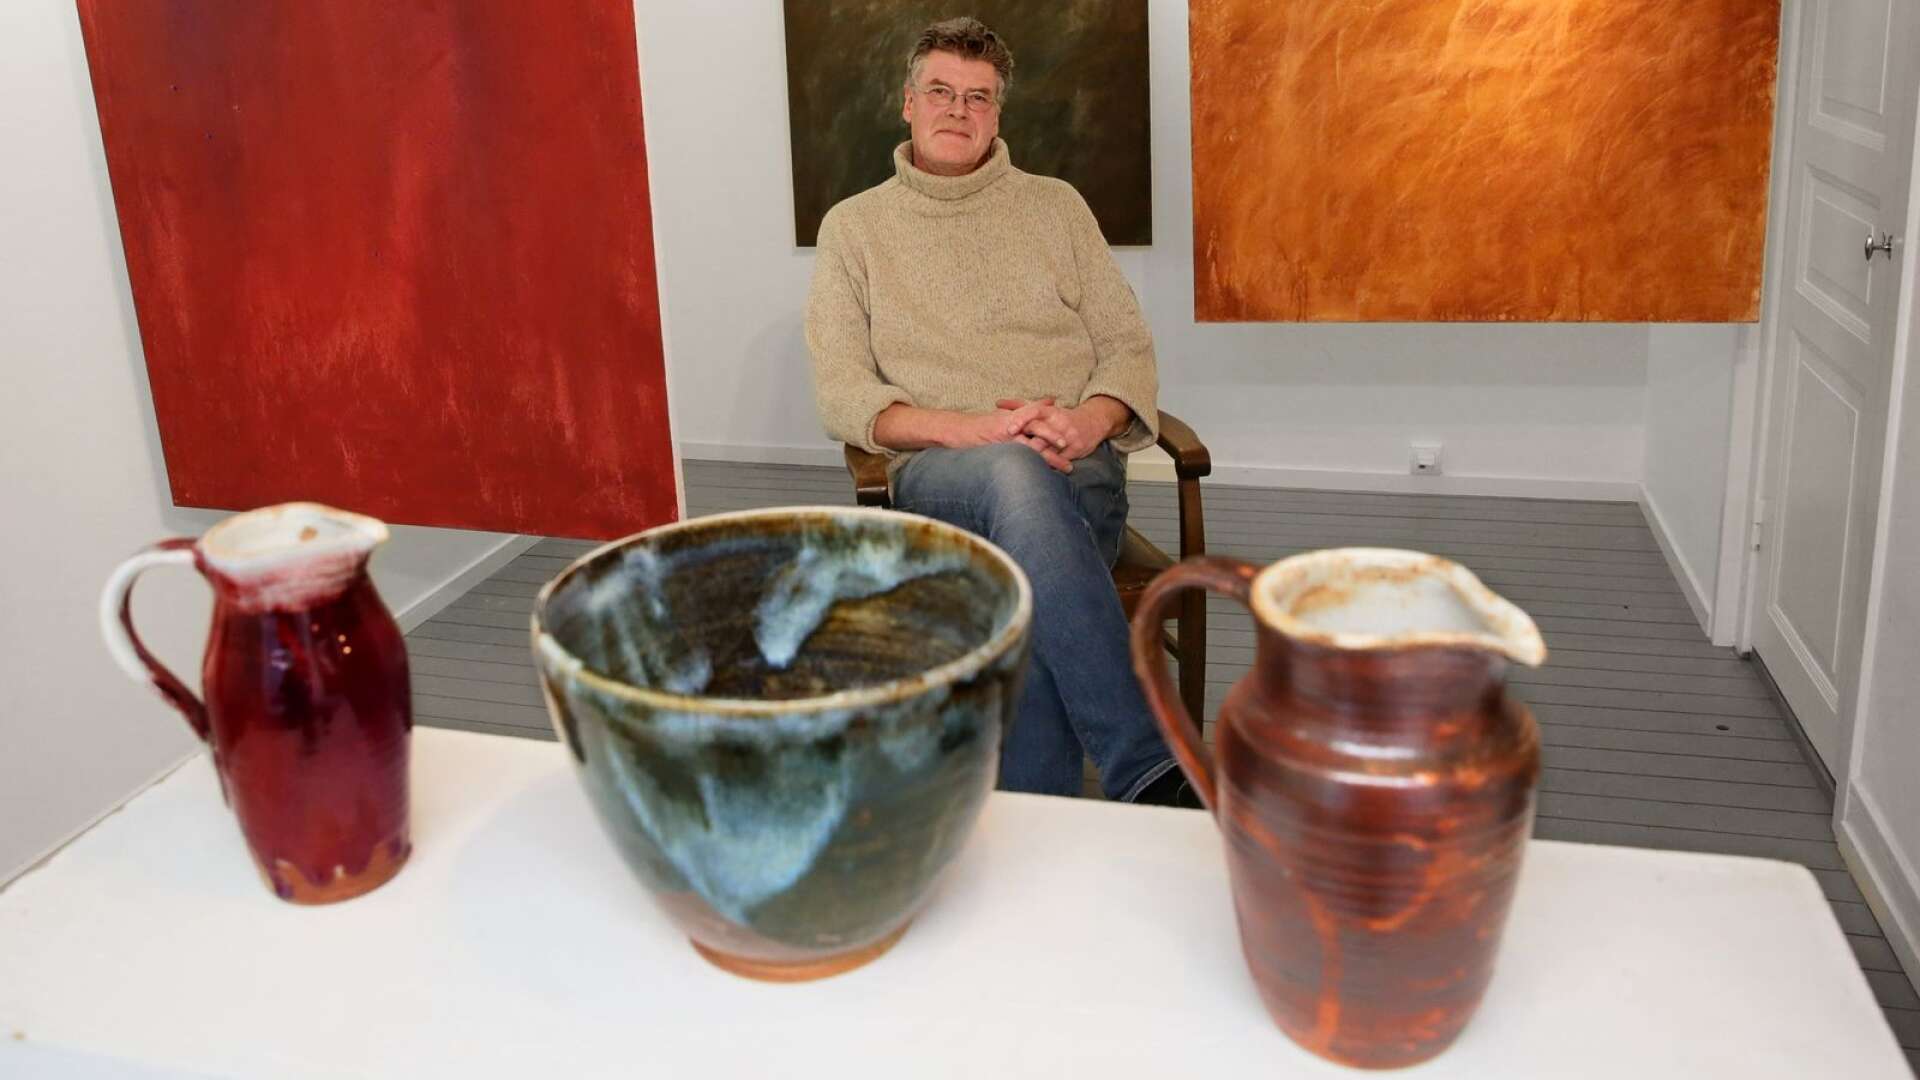 Börje Eriksson, konstnär och ordförande i Konstnärsföreningen Lidan, visar ett urval av sin keramik och sina målningar i det lilla galleriet.